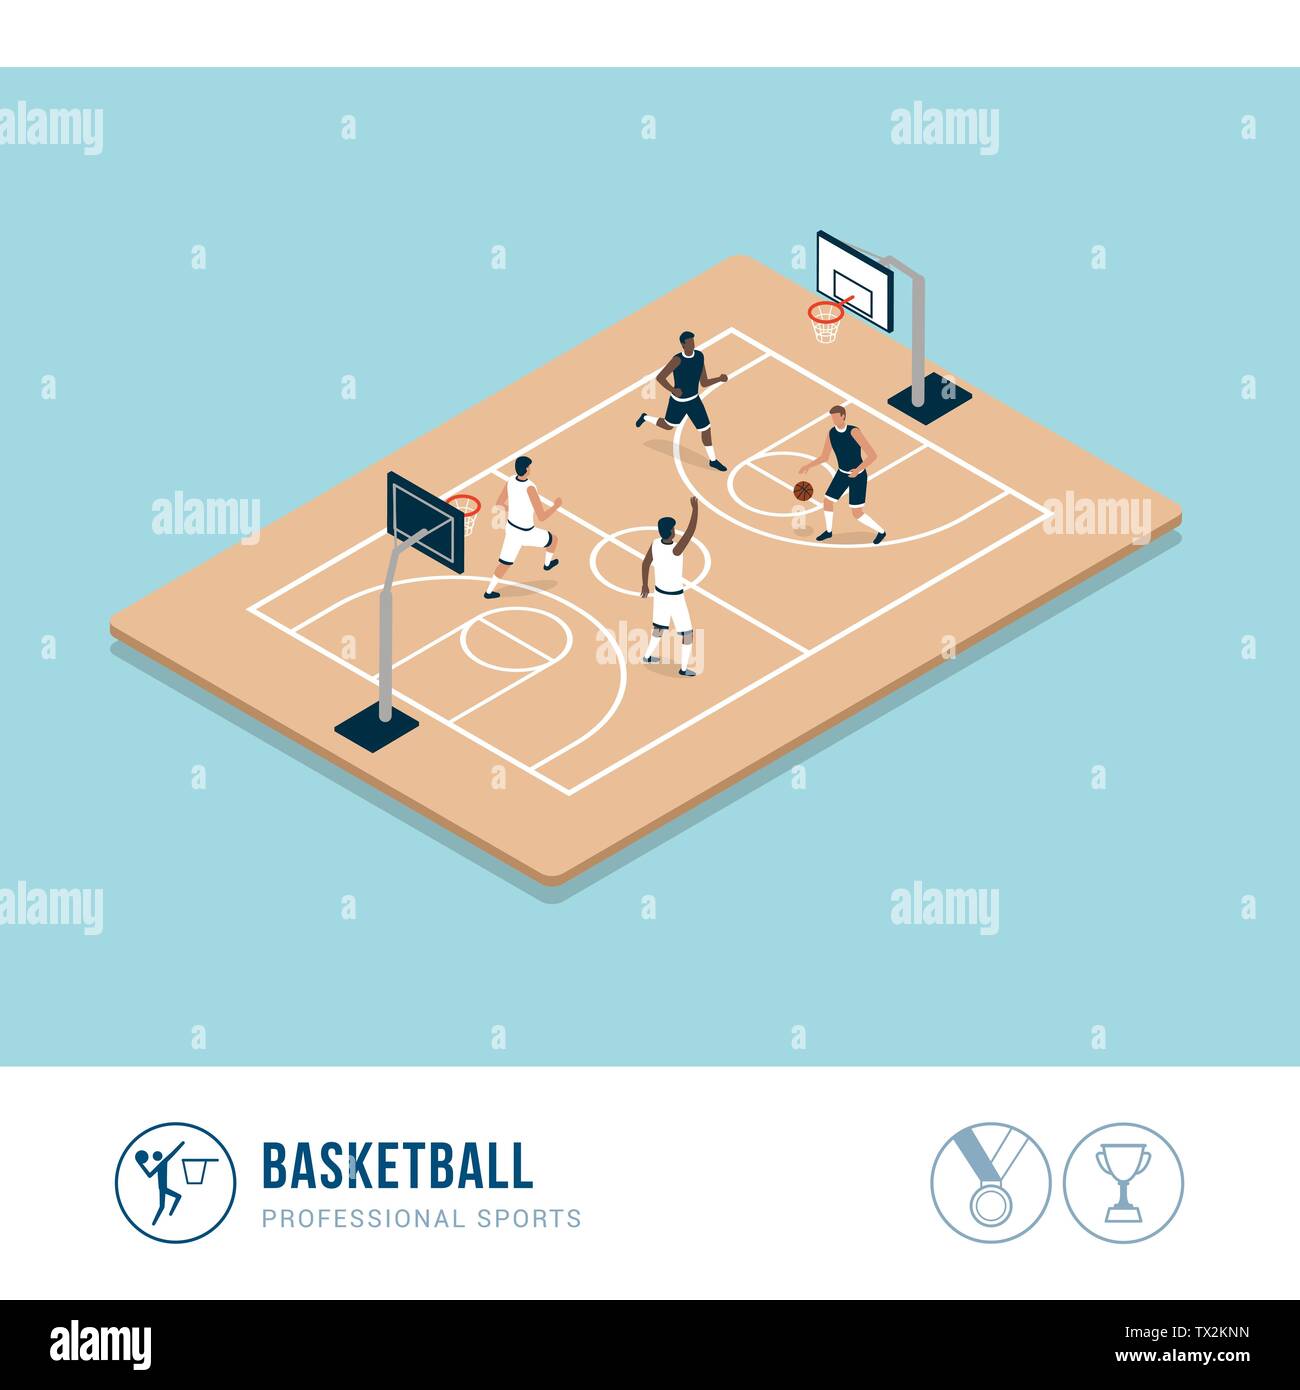 Professionelle Sport Wettbewerb: Basketball Spiel und Spieler im Hof Stock Vektor